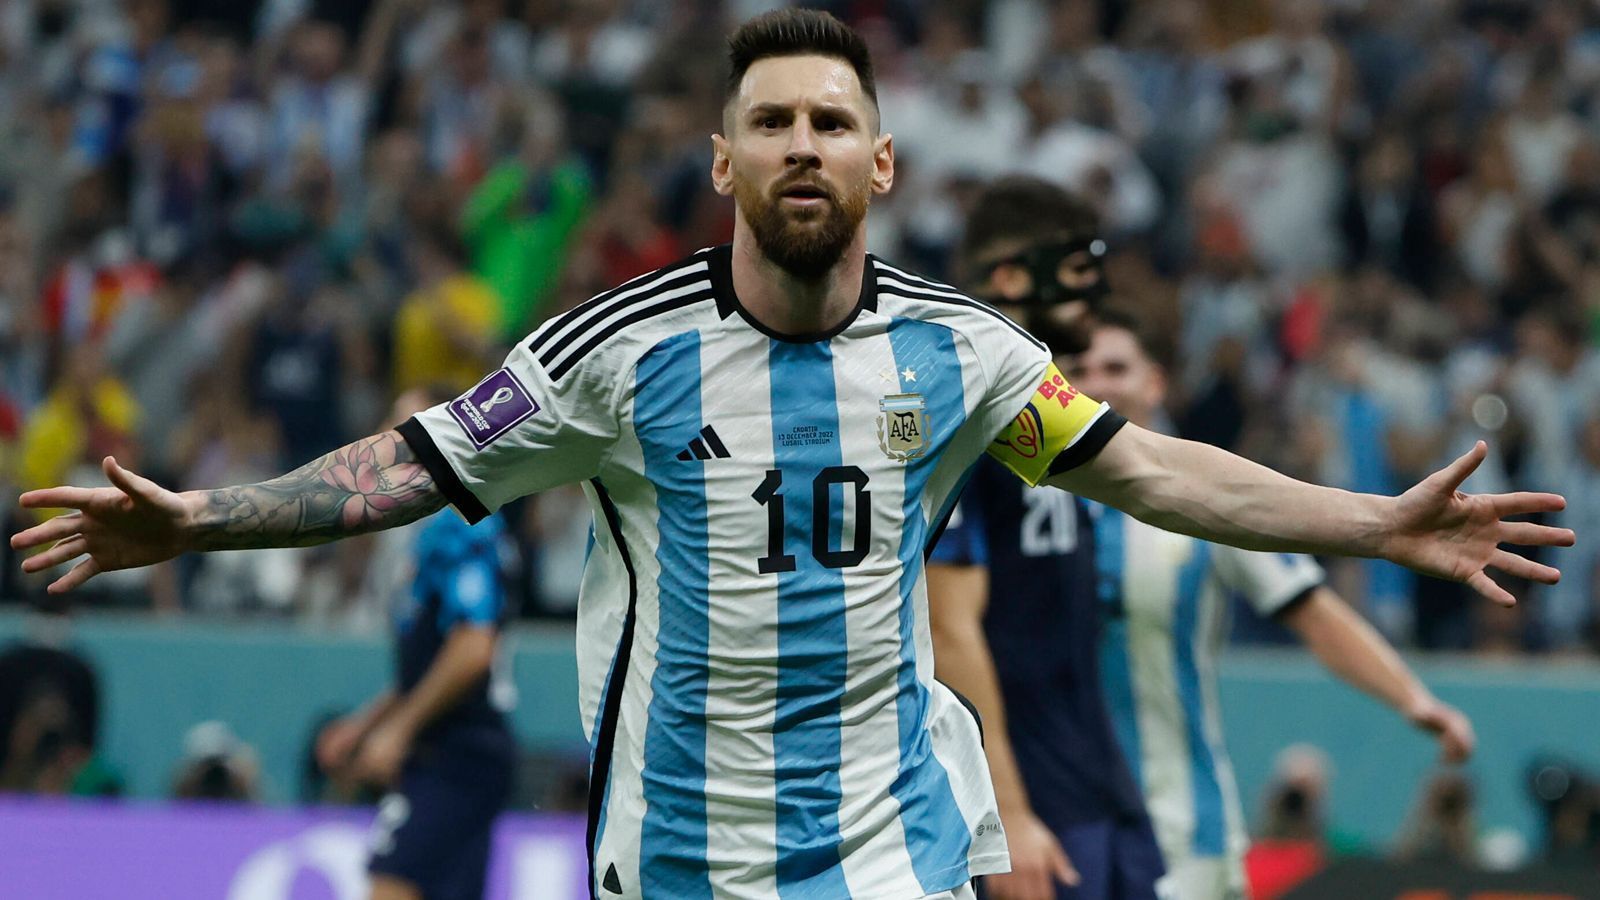 
                <strong>Messis Nationalmannschafts-Rekorde bei der WM in Katar 2022</strong><br>
                Lionel Messi hat mit Argentinien in Katar gegen Frankreich den ersehnten Titel geholt und auf dem Weg dorthin einige Rekorde geknackt. ran nennt die Bestmarken, die Messi in seiner Nationalmannschaftskarriere in Katar gebrochen hat (Stand 18.12.2022 nach dem WM-Finale)
              